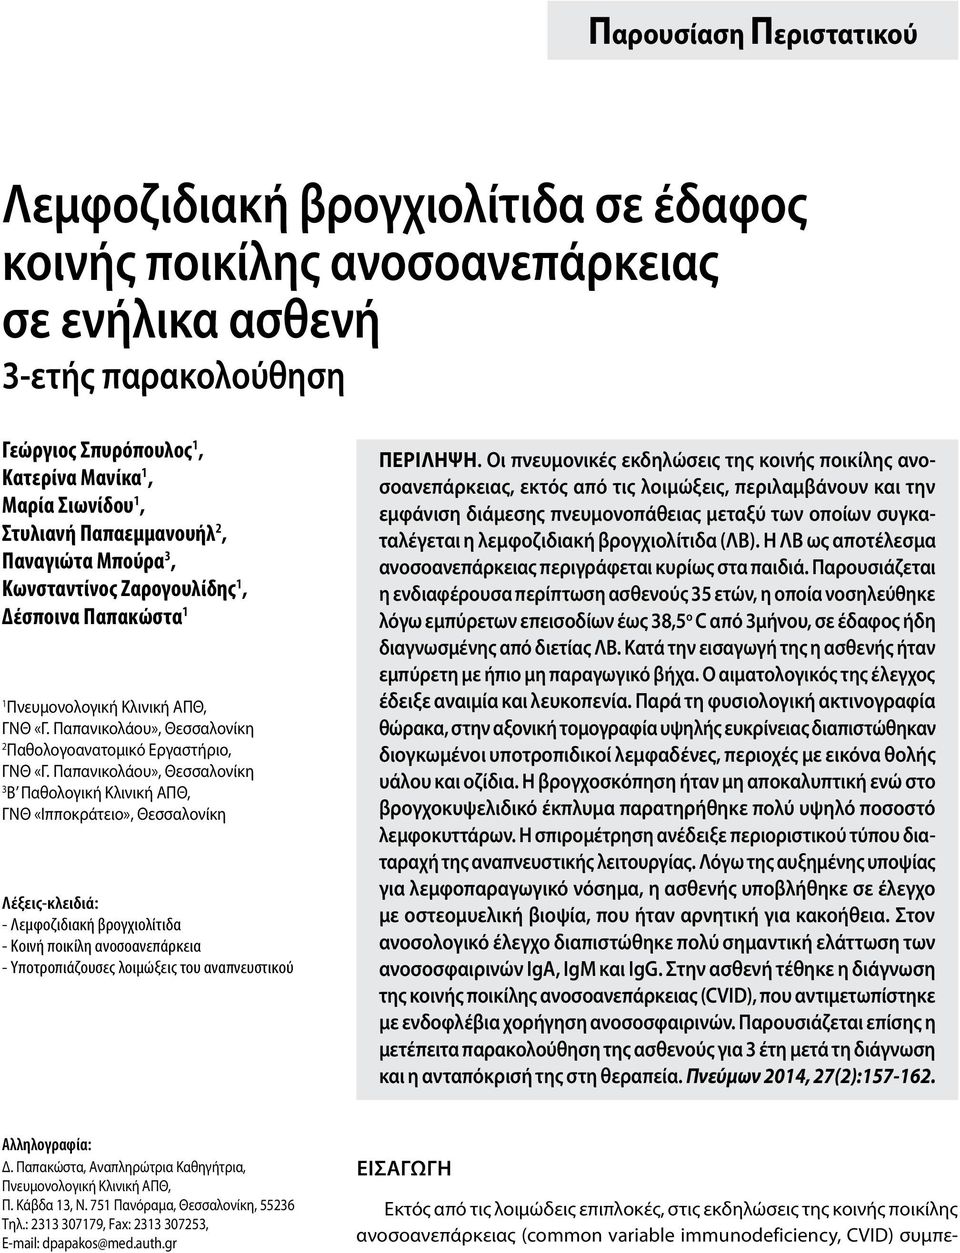 Παπανικολάου», Θεσσαλονίκη 3 Β Παθολογική Κλινική ΑΠΘ, ΓΝΘ «Ιπποκράτειο», Θεσσαλονίκη Λέξεις-κλειδιά: - Λεμφοζιδιακή βρογχιολίτιδα - Kοινή ποικίλη ανοσοανεπάρκεια - Yποτροπιάζουσες λοιμώξεις του